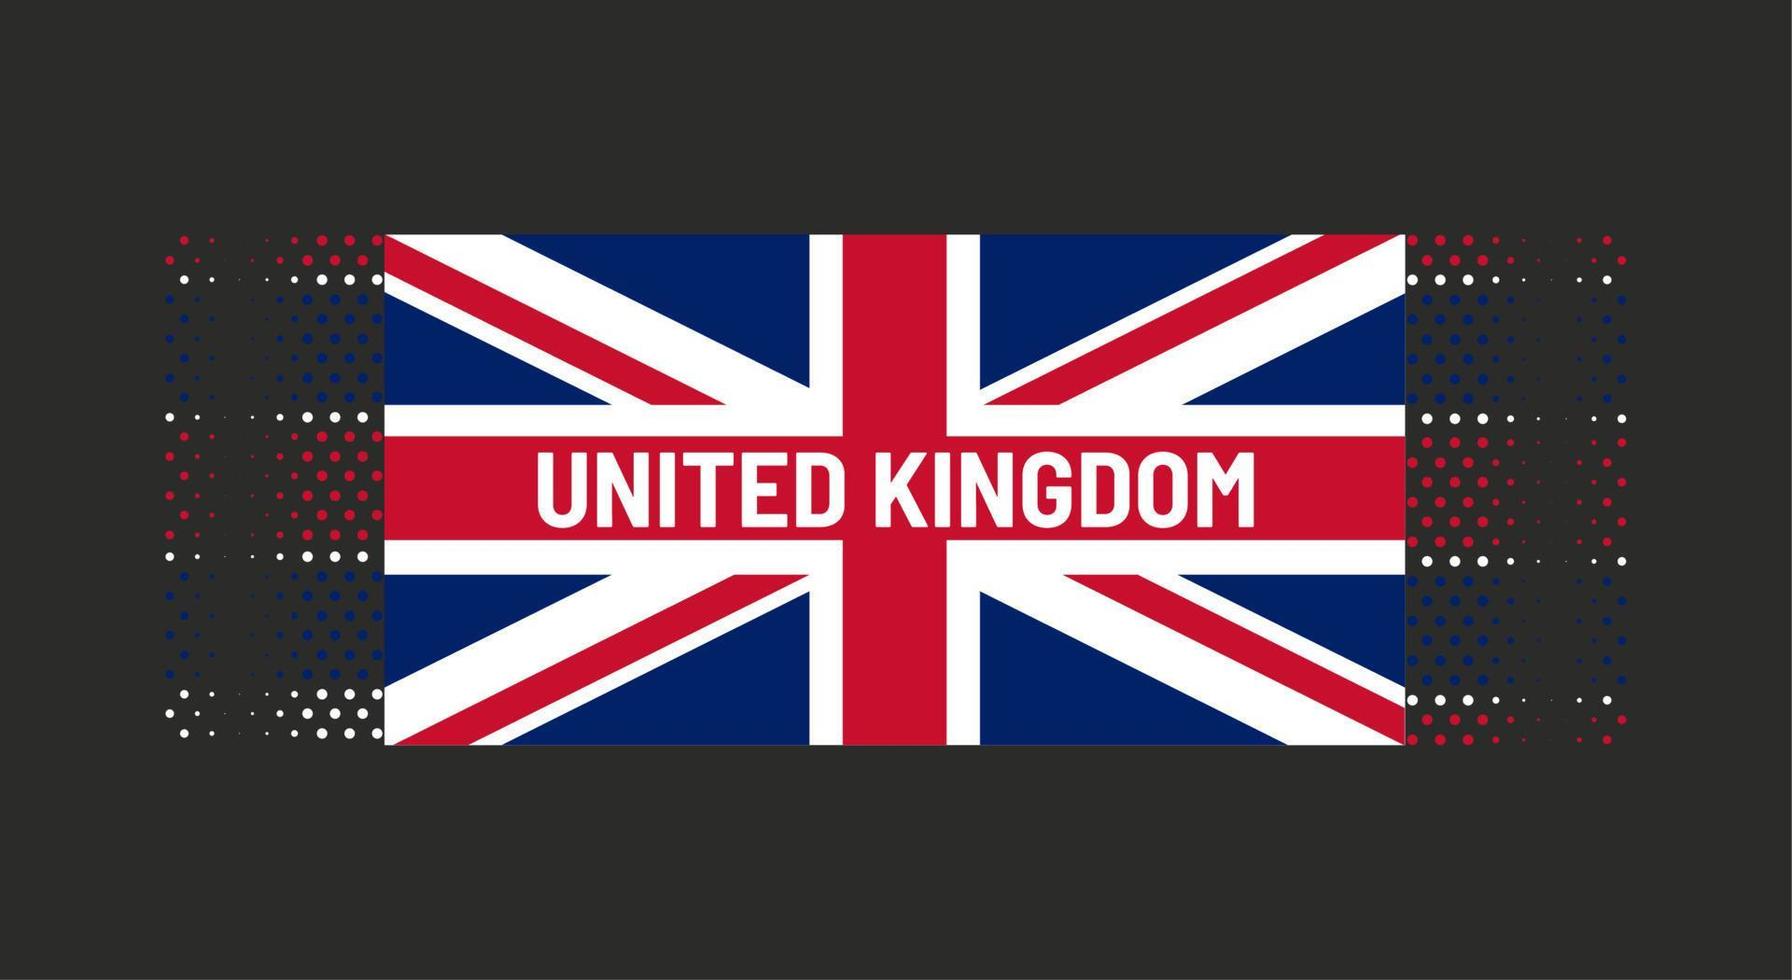 ilustração em vetor bandeira do reino unido com palavras reino unido em fundo preto. pano de fundo pontilhado. cores azul, vermelho, branco.